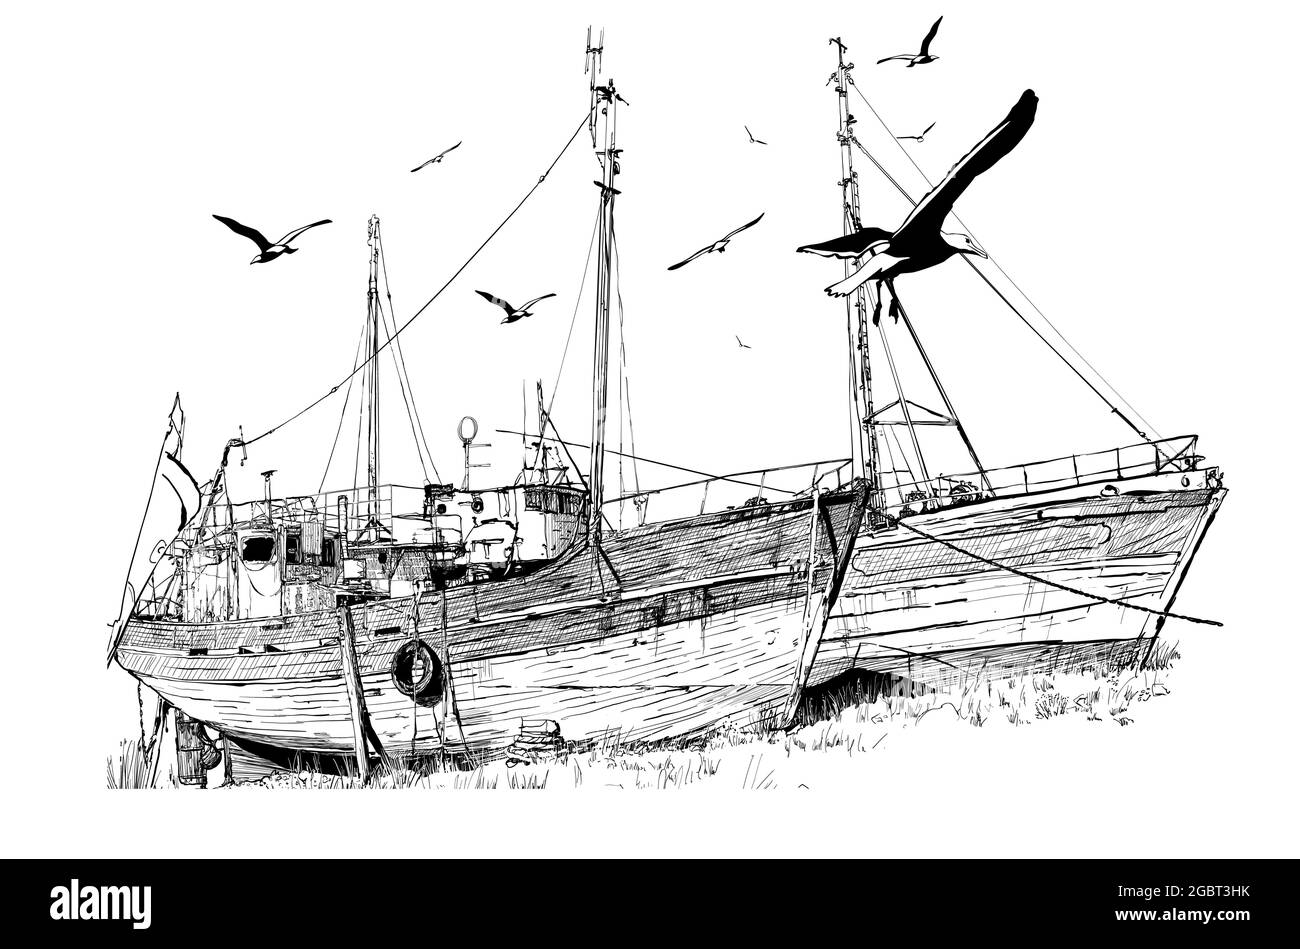 Zeichnung von zwei alten verlassenen Fischerbooten bei Ebbe, Bretagne, Frankreich. - Vektordarstellung Stock Vektor